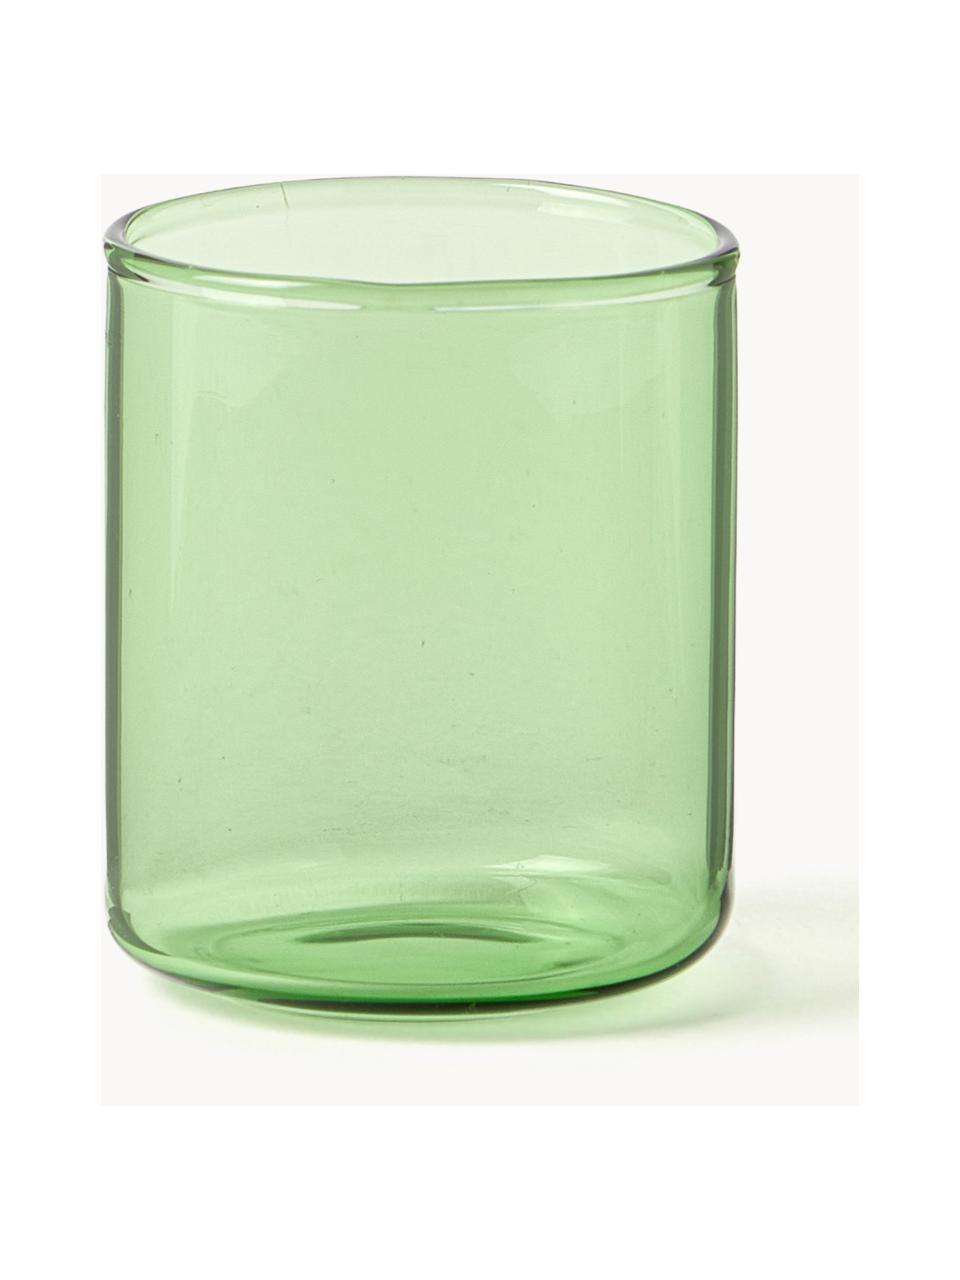 Poháre na shoty Torino, 2 ks, Borosilikátové sklo

Objavte všestrannosť borosilikátového skla pre váš domov! Borosilikátové sklo je kvalitný, spoľahlivý a robustný materiál. Vyznačuje sa mimoriadnou tepelnou odolnosťou a preto je ideálny pre váš horúci čaj alebo kávu. V porovnaní s klasickým sklom je borosilikátové sklo odolnejšie voči rozbitiu a prasknutiu, a preto je bezpečným spoločníkom vo vašej domácnosti., Zelená, priehľadná, Ø 4 x V 5 cm, 60 ml